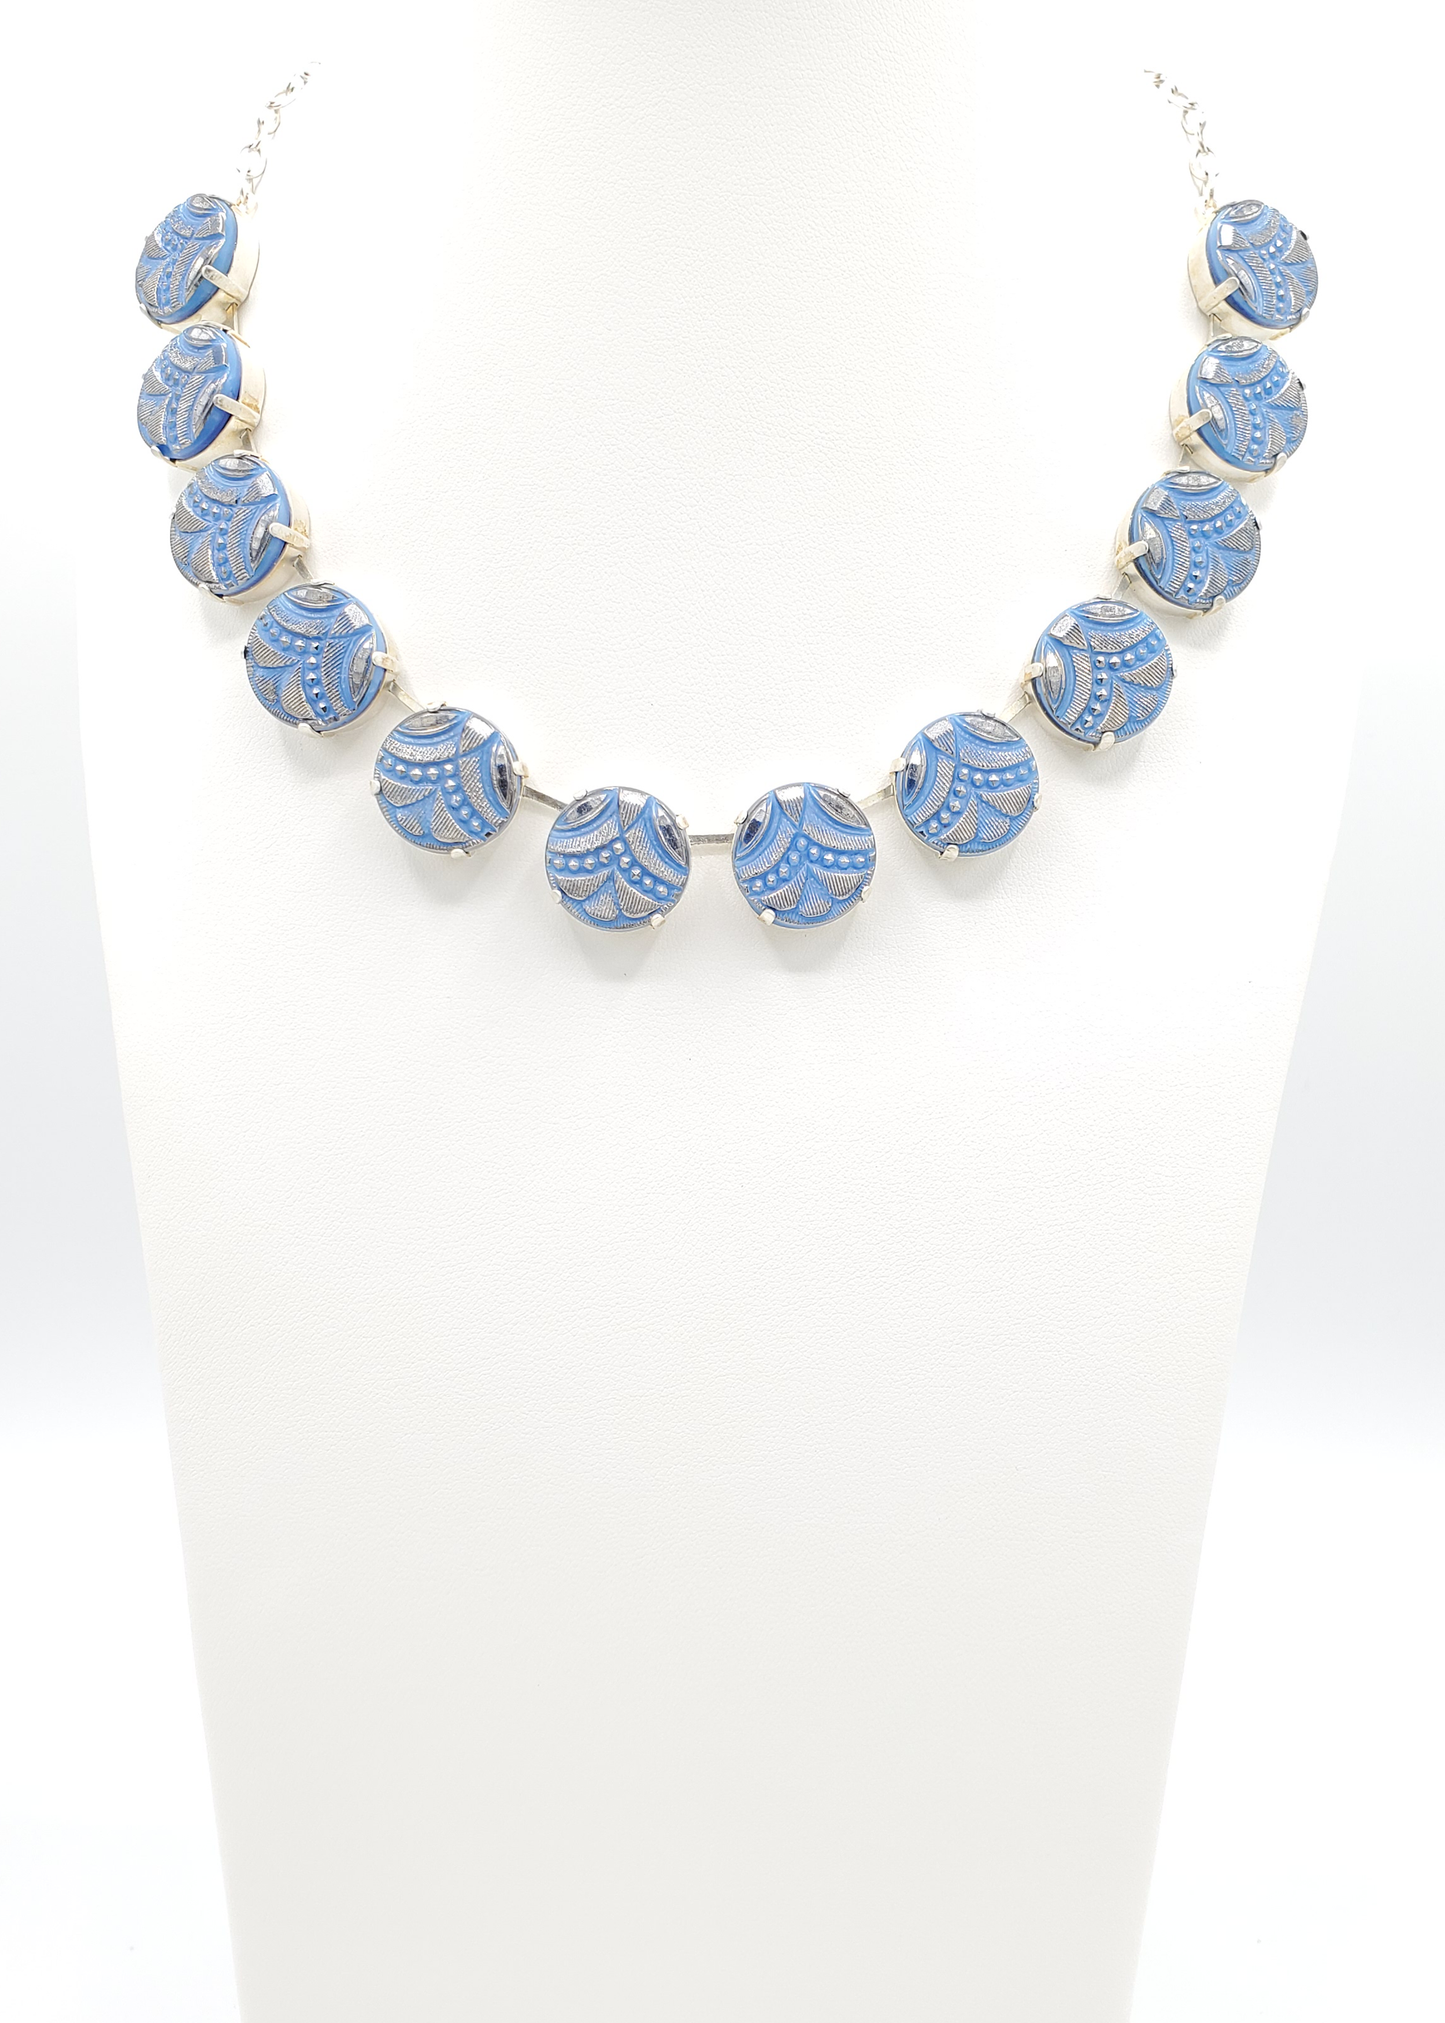 Cornflower Blue & Silver Garlands Necklace